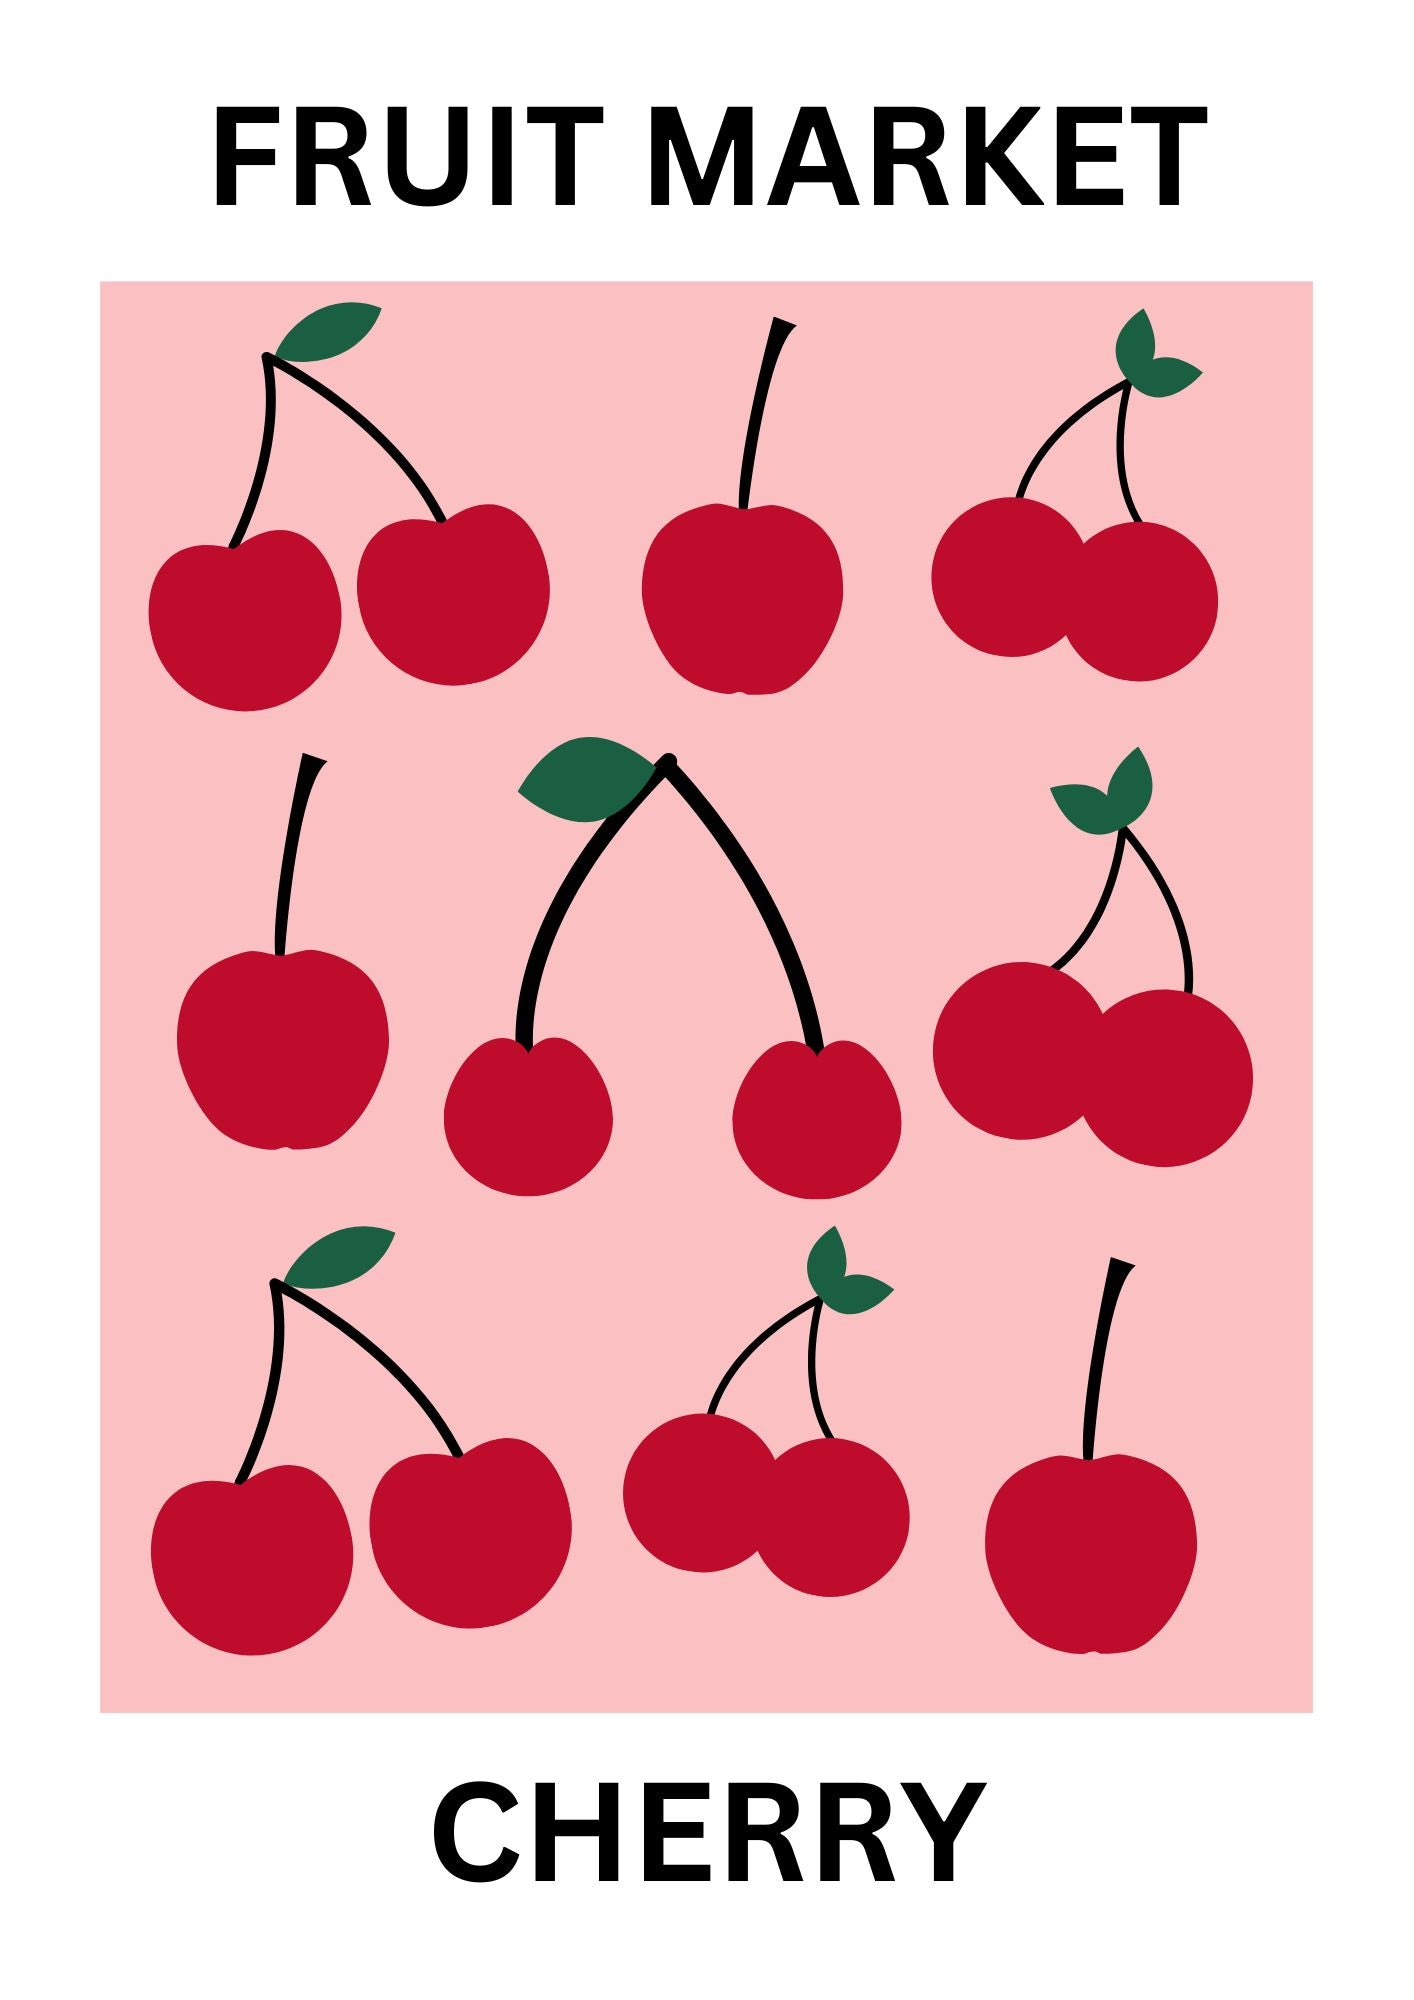 Fruit market cherry poster